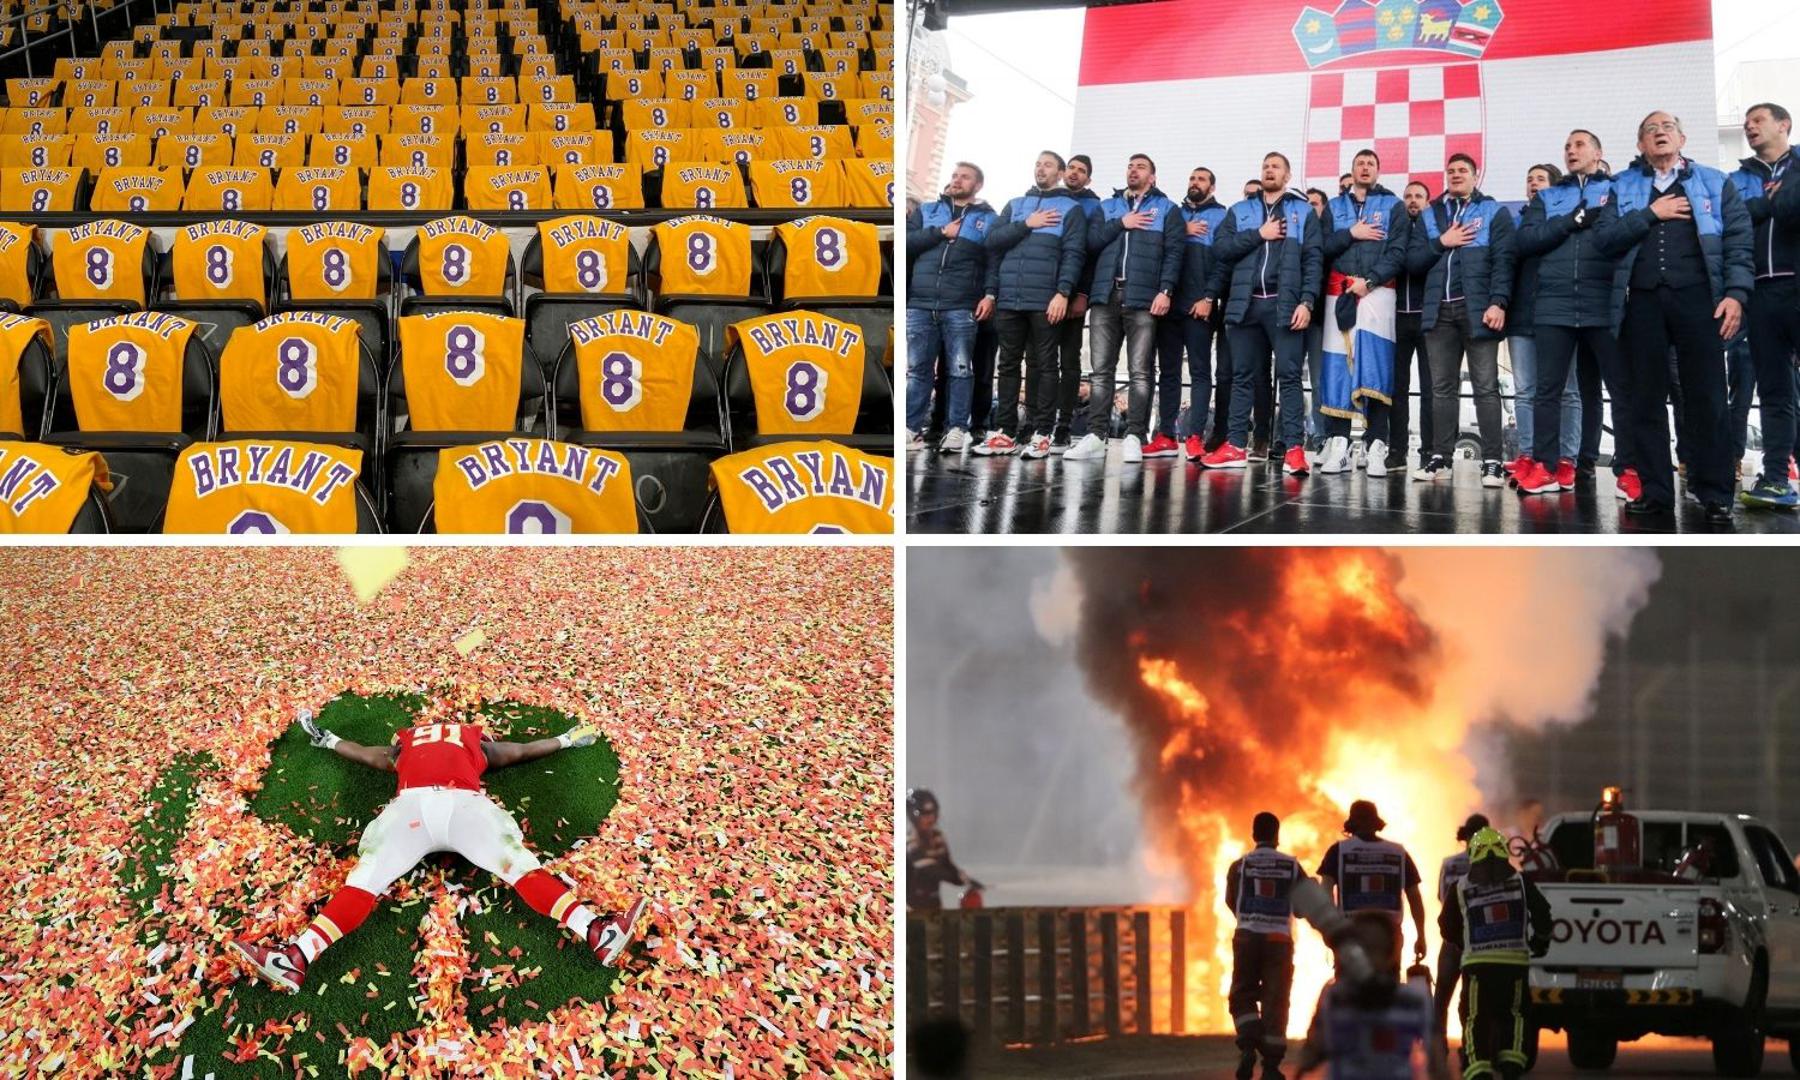 Ovu čudnu godinu pamtit ćemo po nezaboravnim trenucima u sportu koje nam je priredila. Od praznih tribina, do odlaska velikana i velikih trofeja za Hrvatsku...